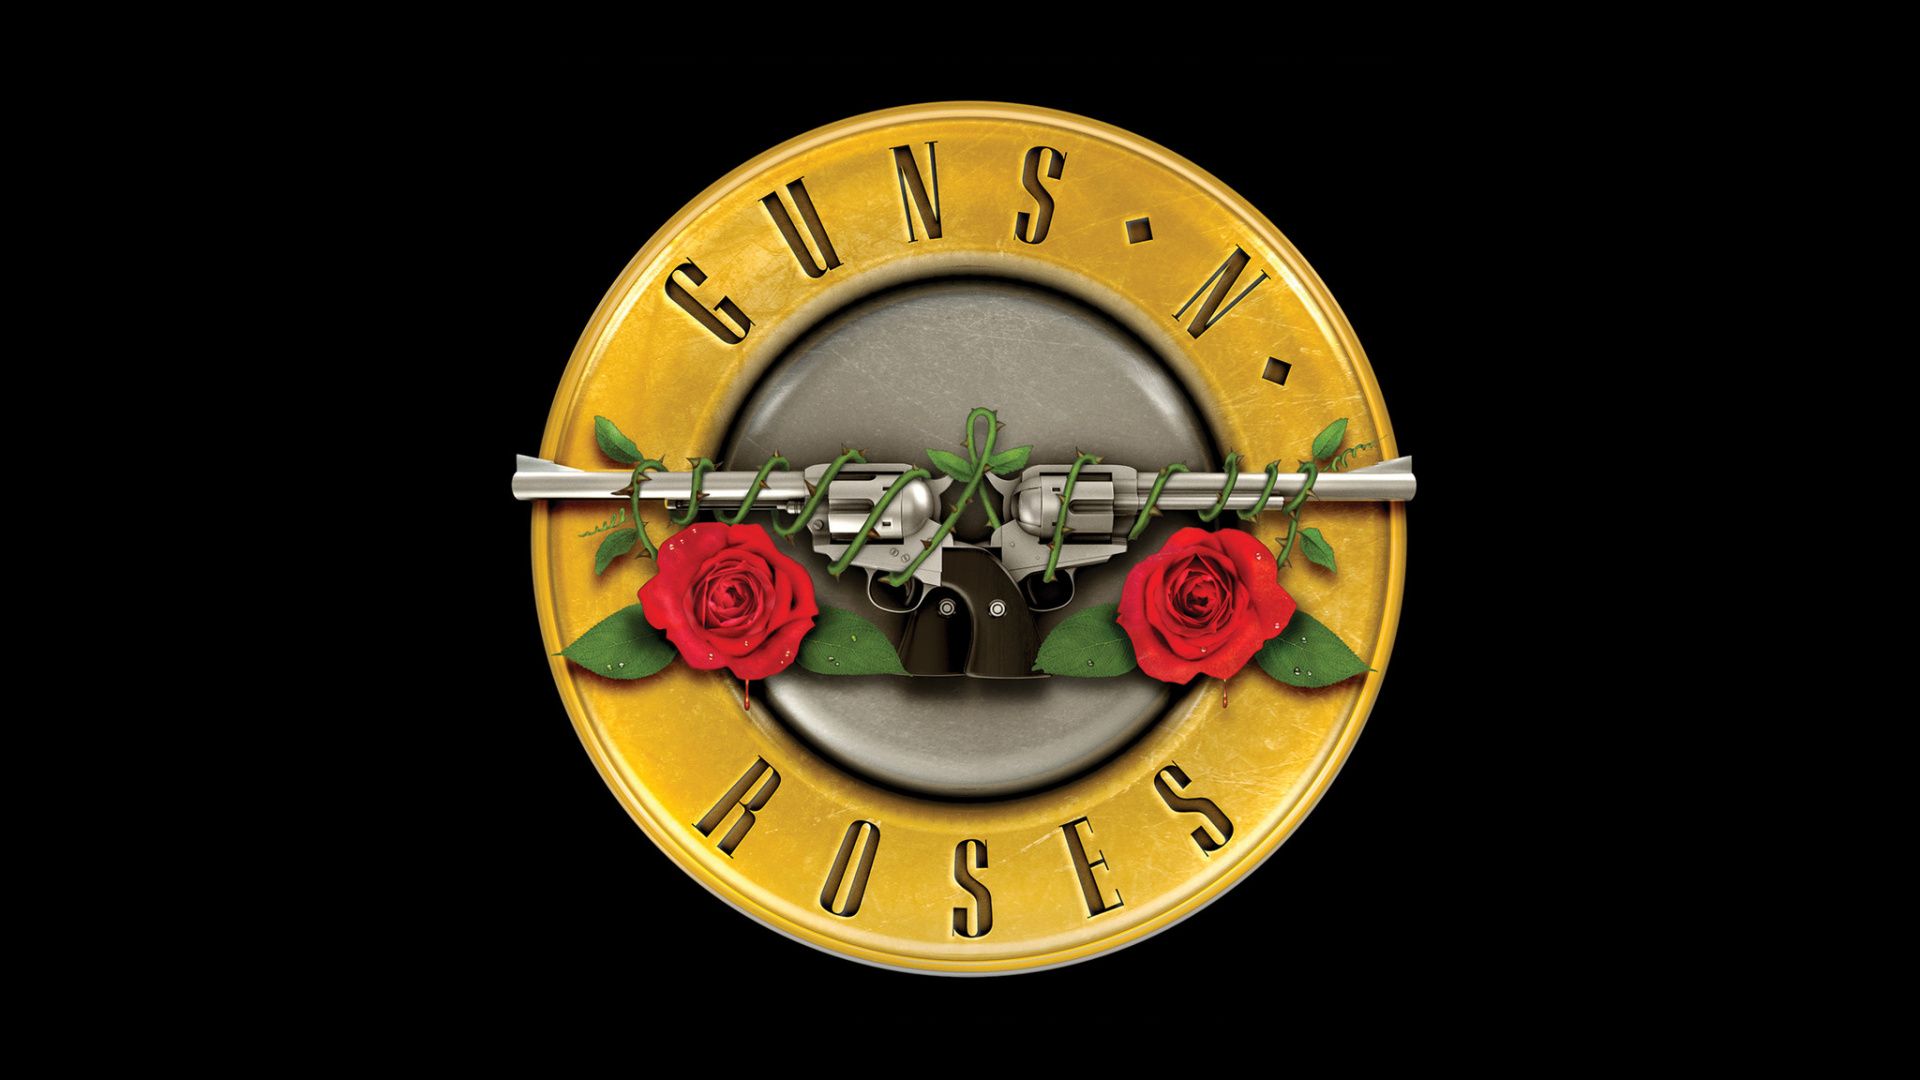 Guns N' Roses - Mobile Phone Wallpaper